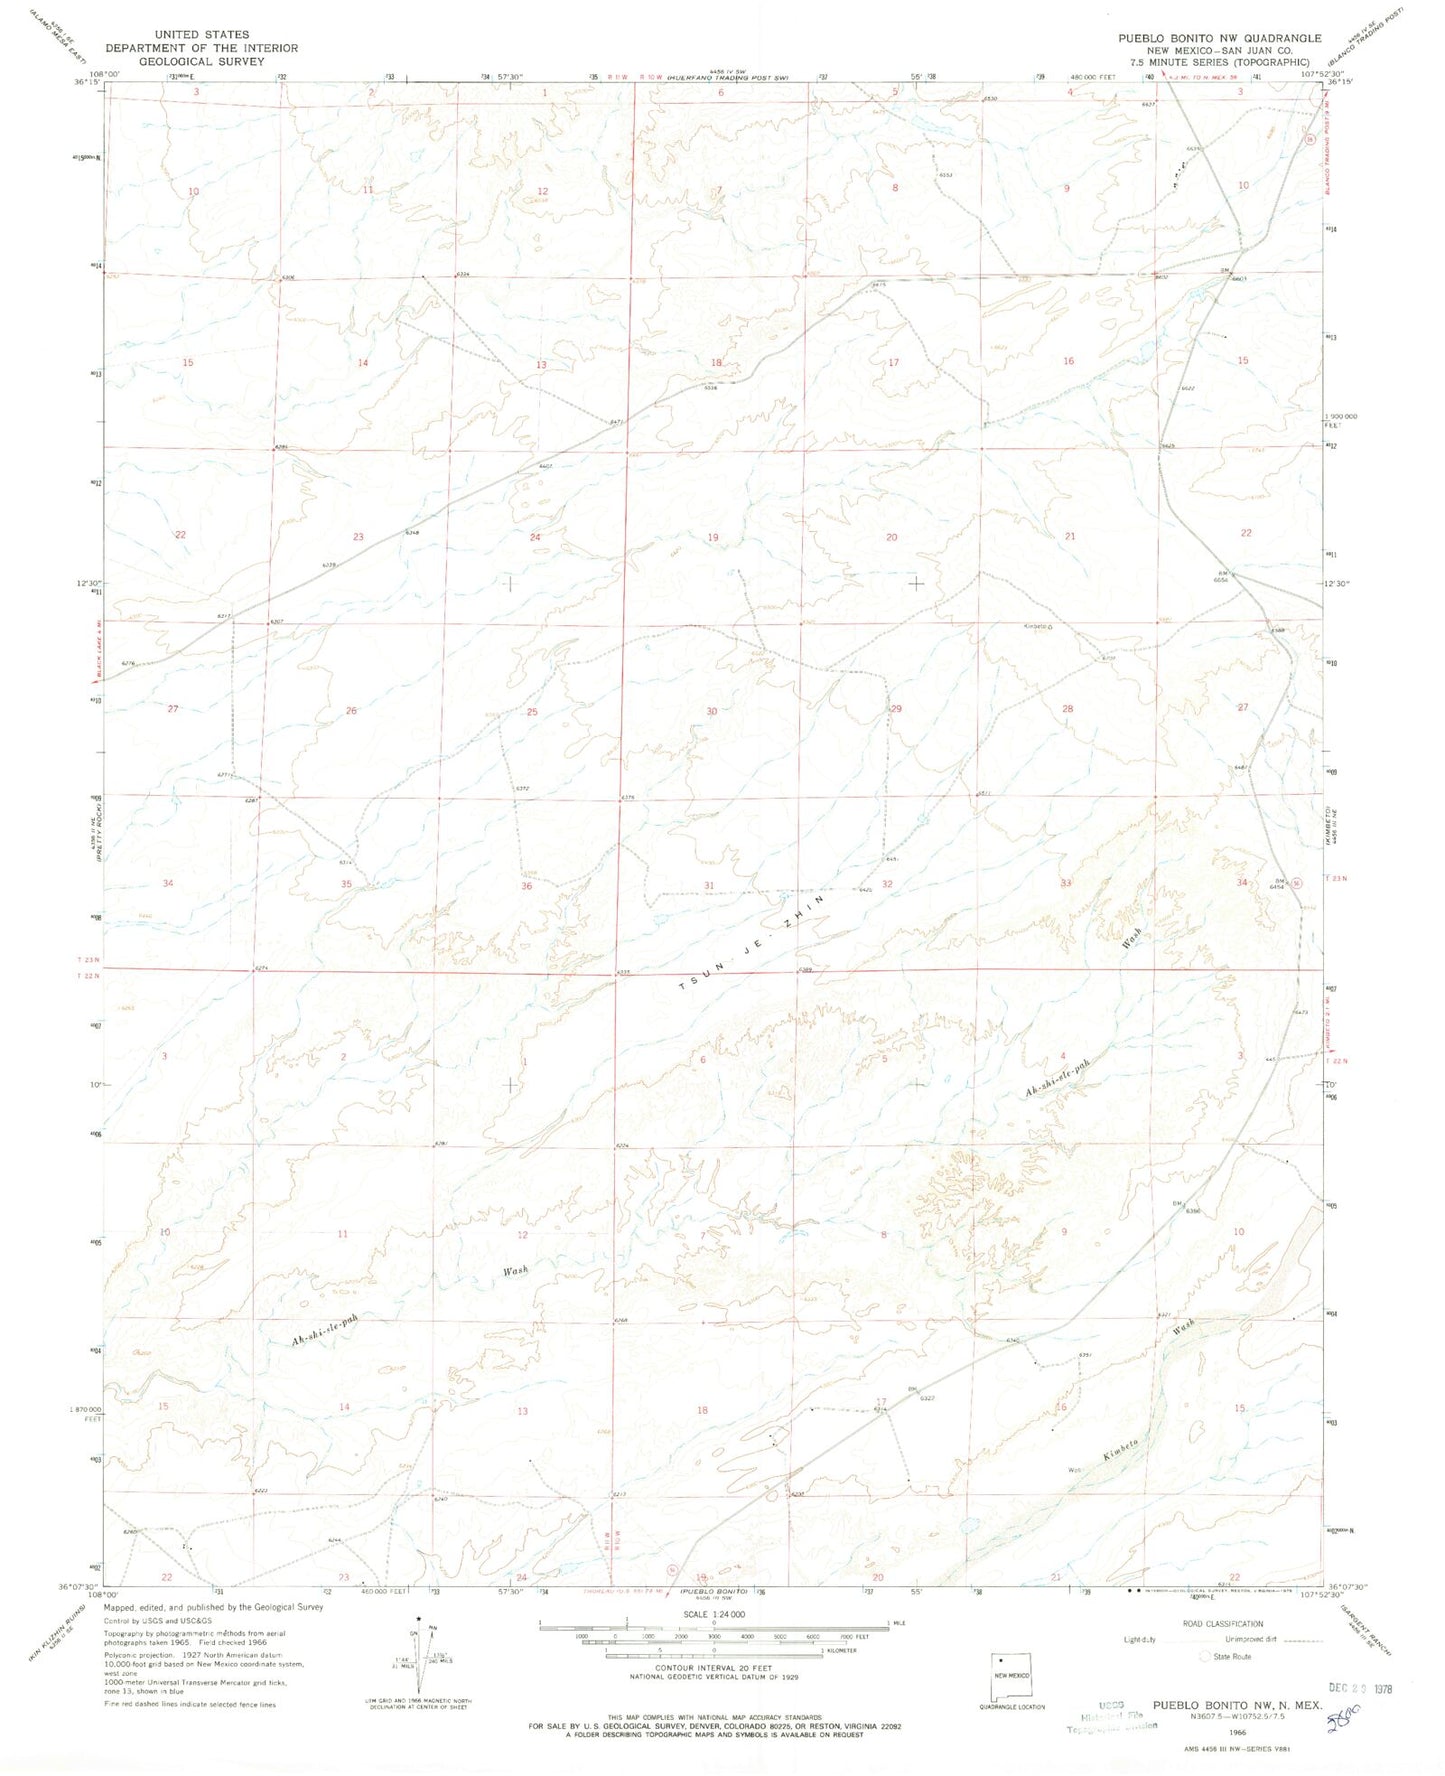 Classic USGS Pueblo Bonito NW New Mexico 7.5'x7.5' Topo Map Image